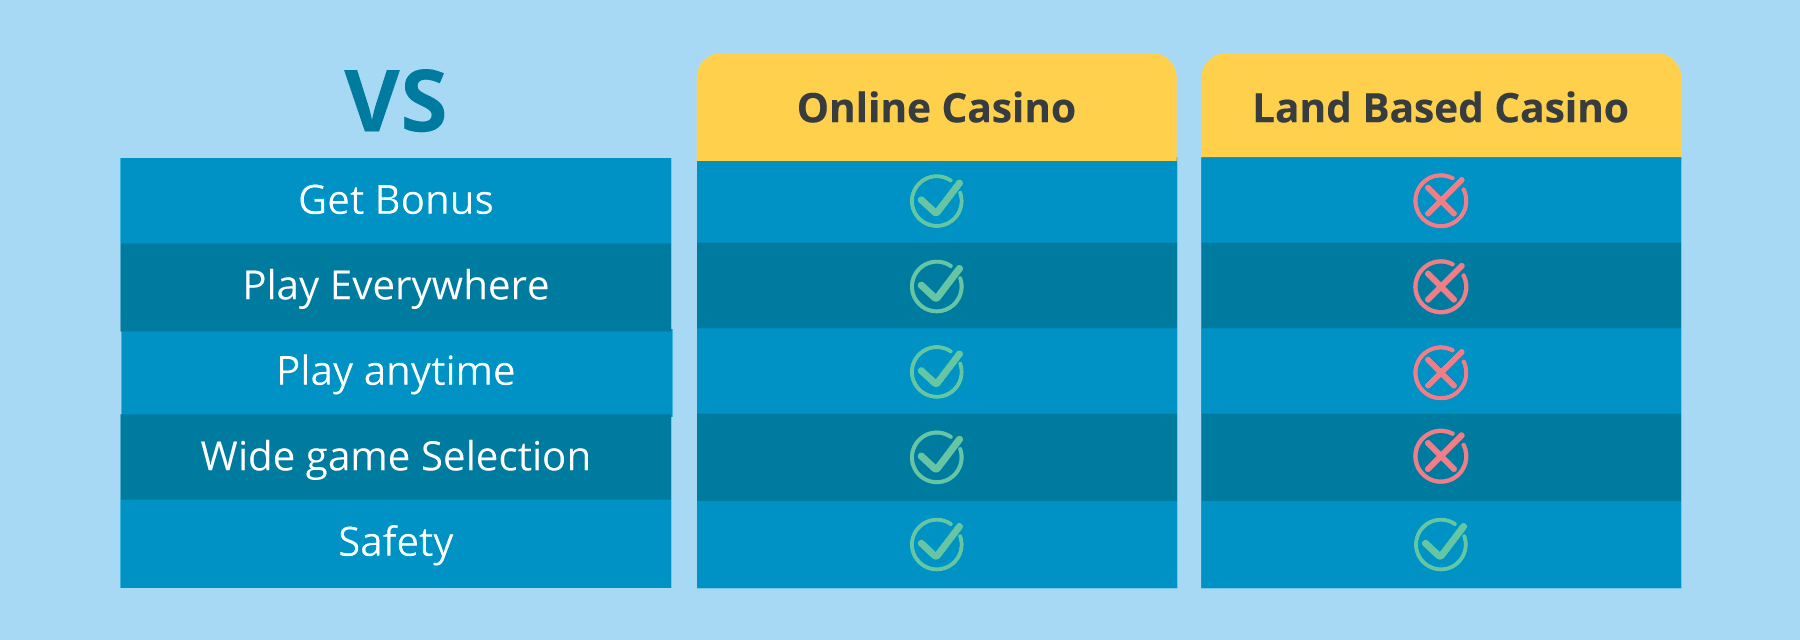 Online Casino vs Land-based Casino online casino UAE - Emirates Casino - UAE Casinos 